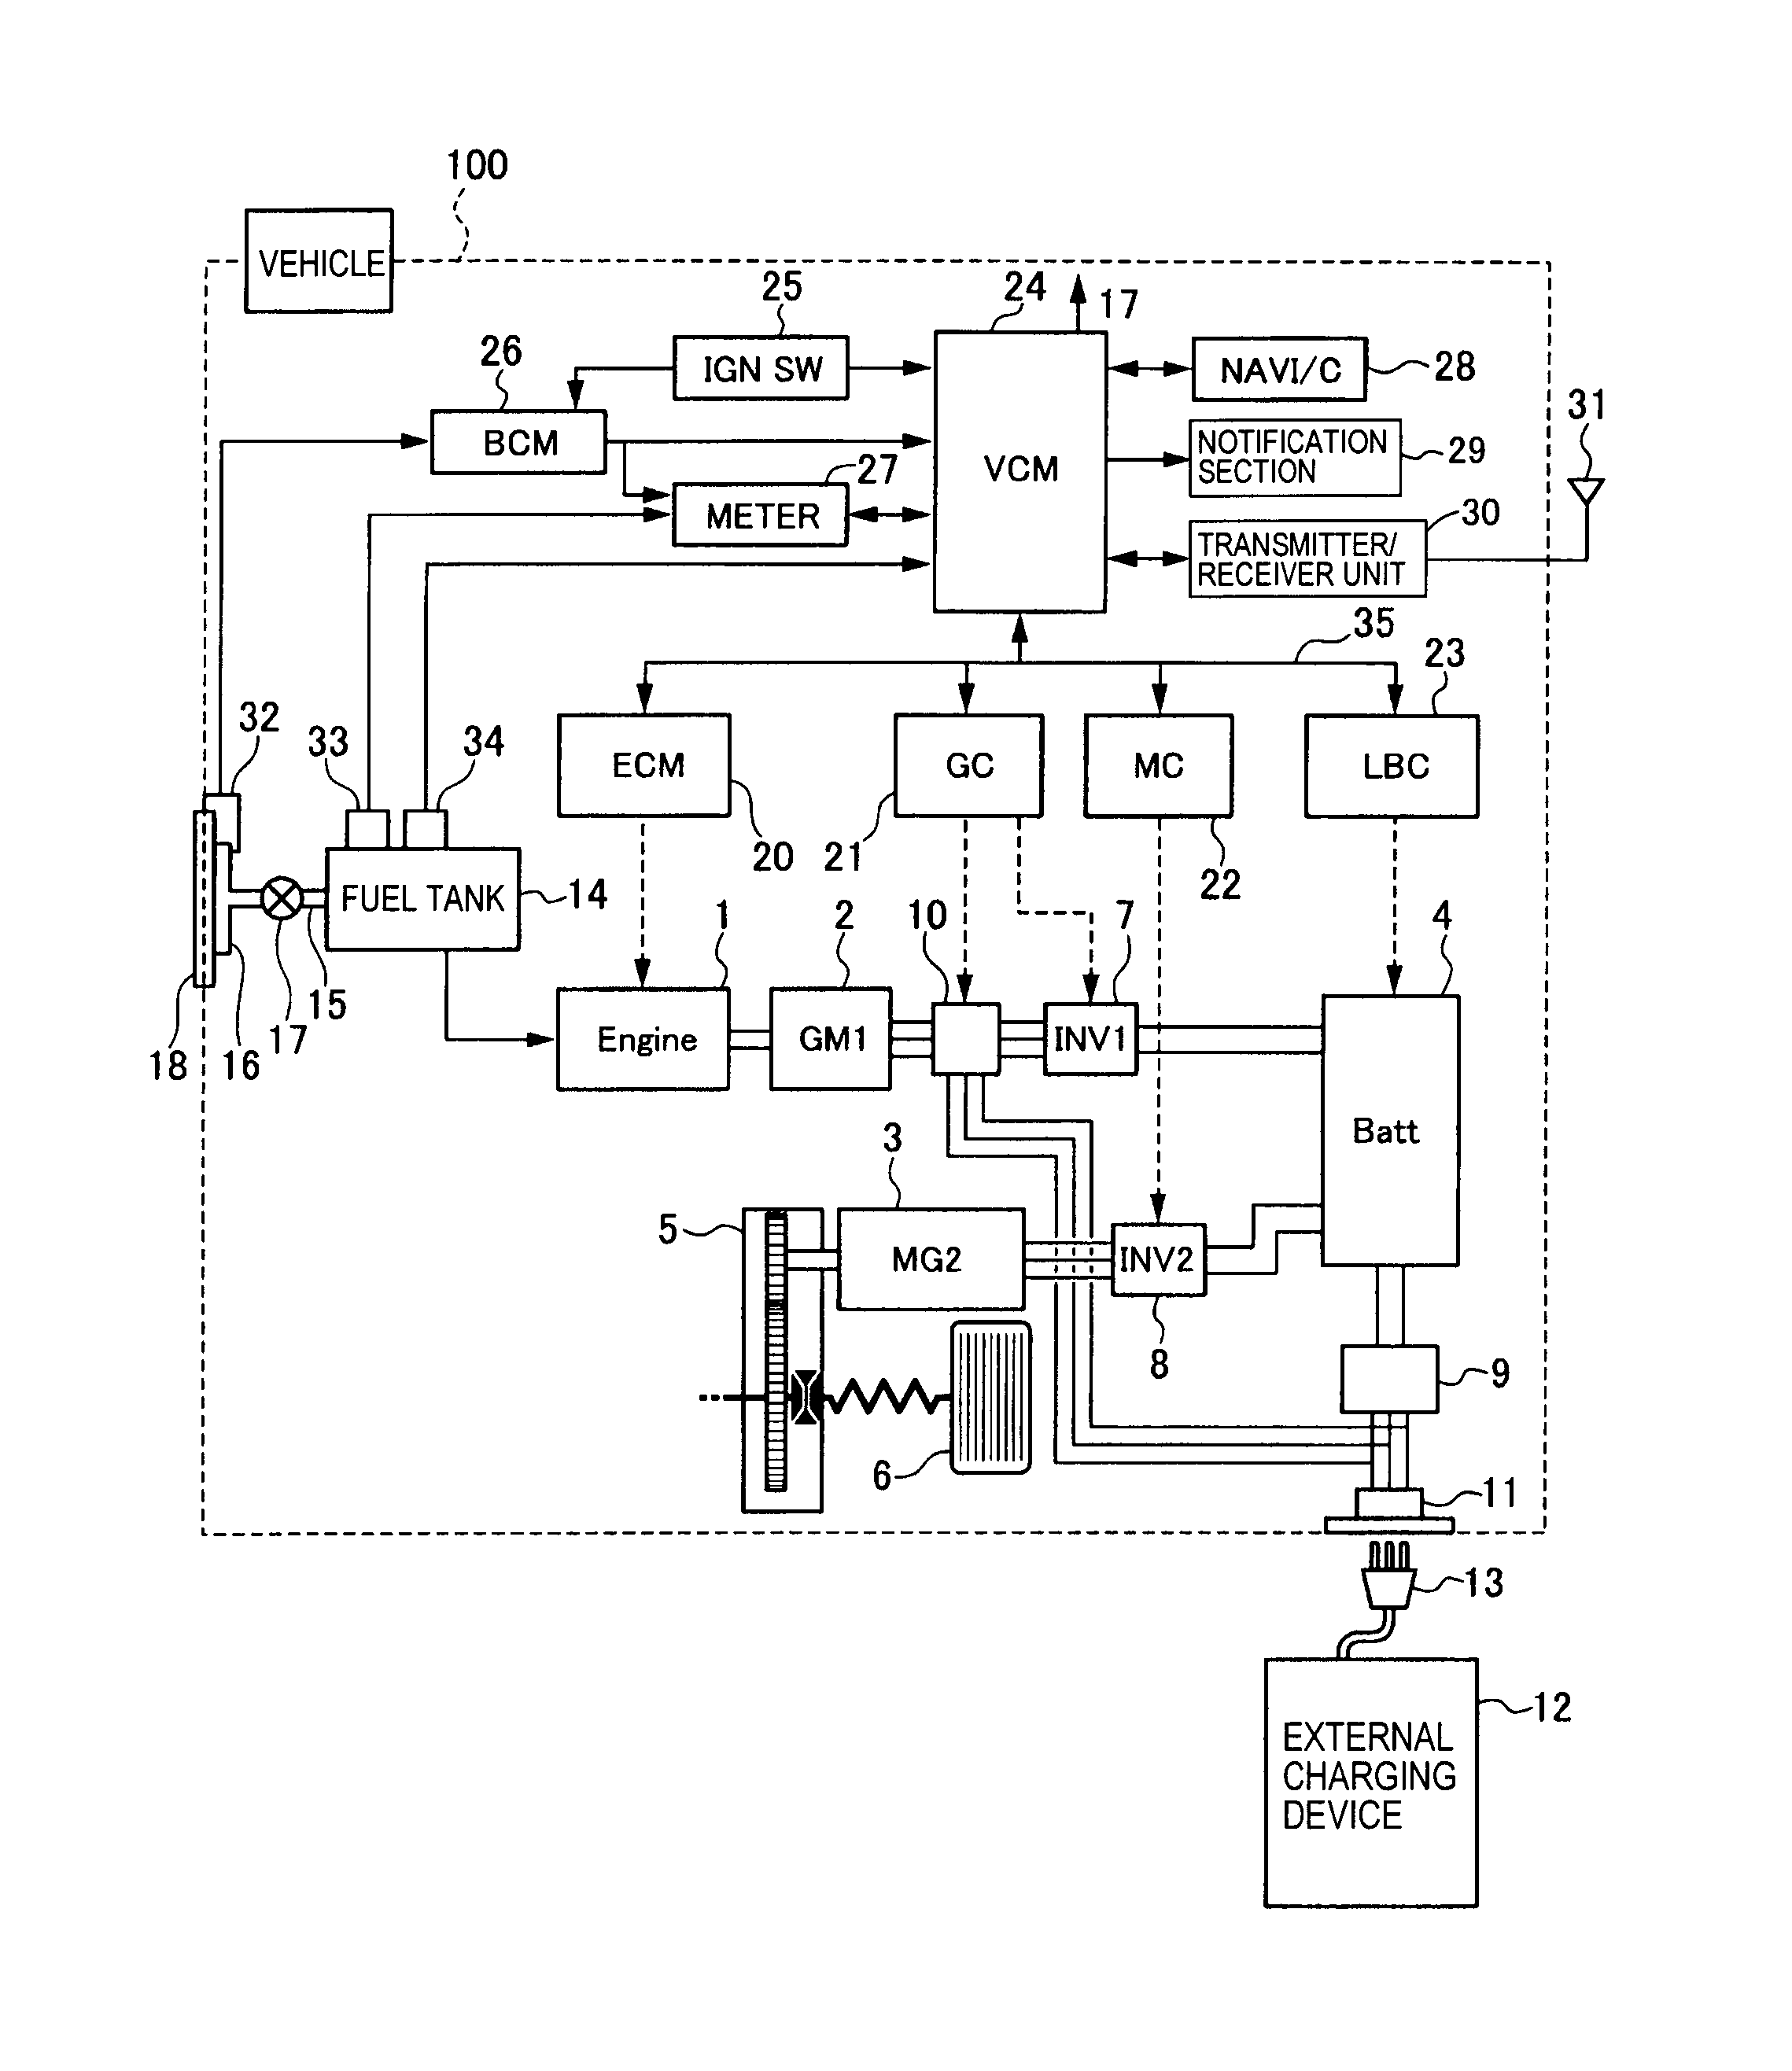 dewalt dcb101 wiring diagram